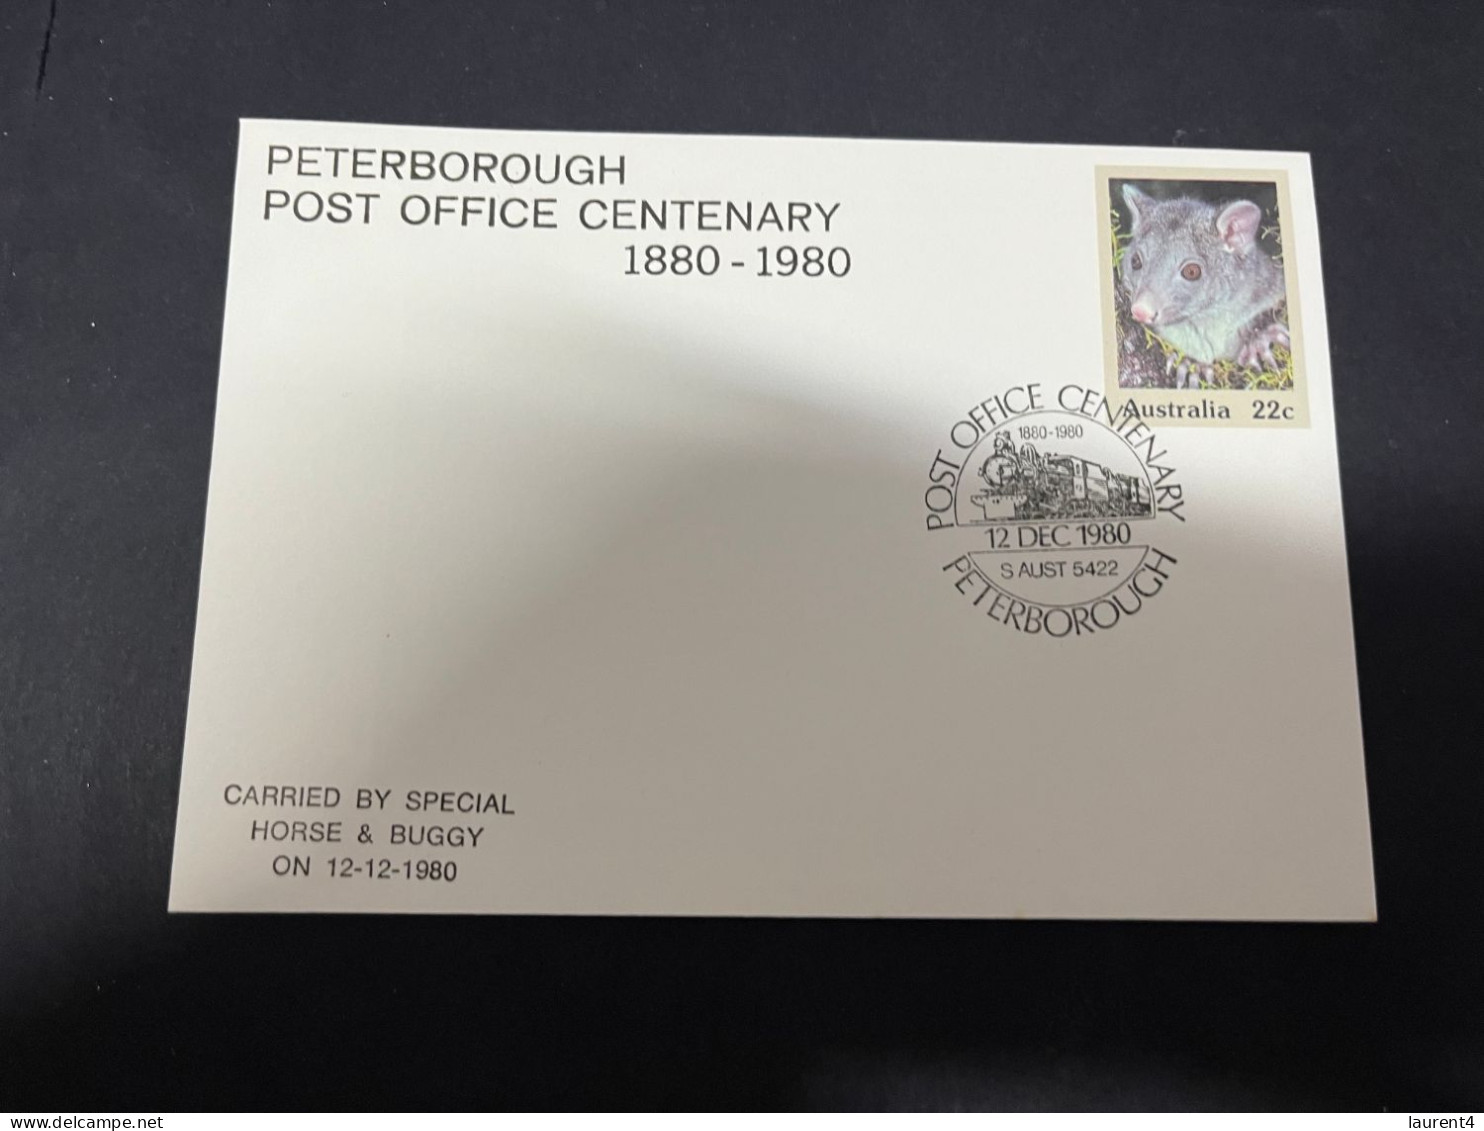 30-4-2023 (3 Z 29) Australia FDC (1 Cover) 1980 - Peterborough Post Office Centenary (Brushtail Possum) - Primo Giorno D'emissione (FDC)